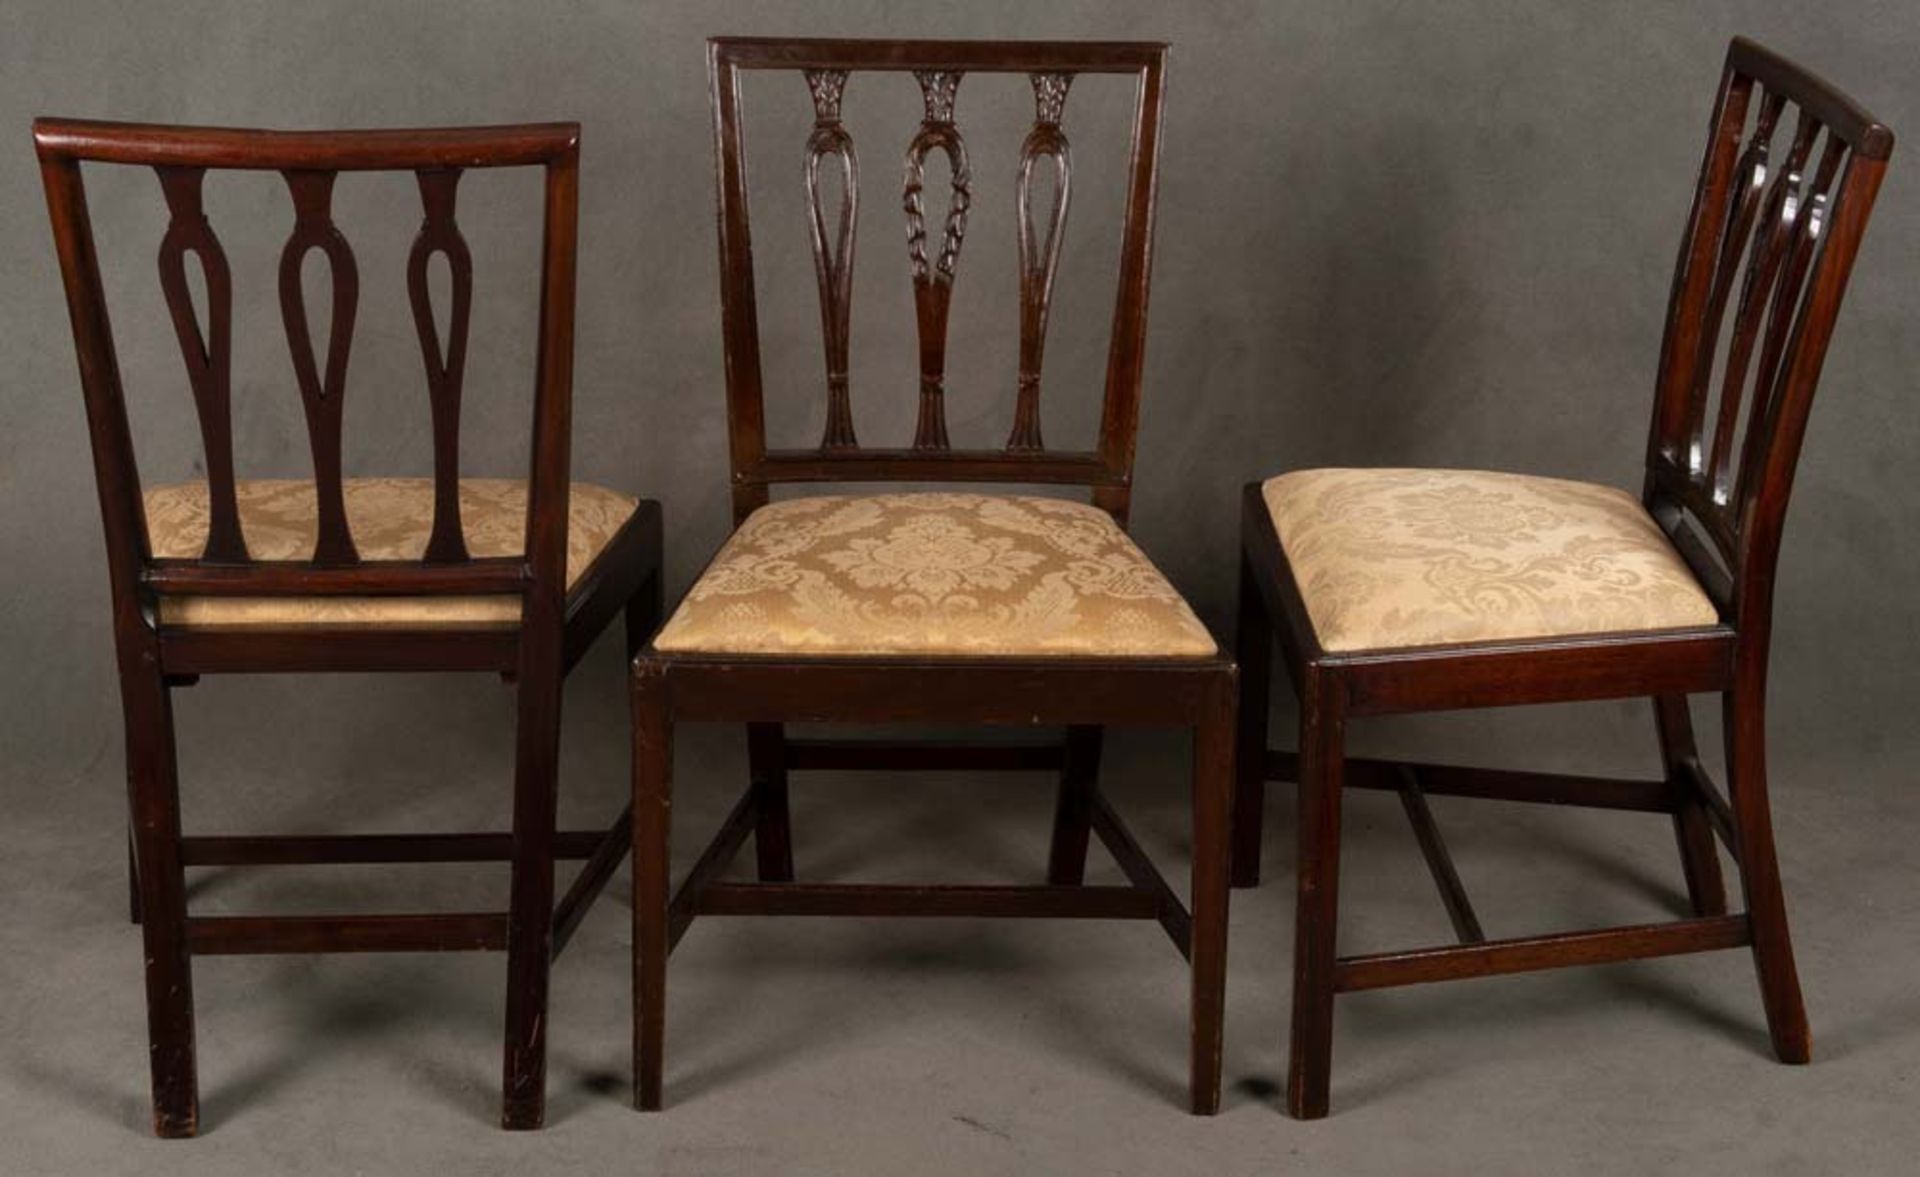 Sechs Hepplewhite-Stühle. England 1780. Massiv Mahagoni, teilw. durchbrochen und geschnitzt,